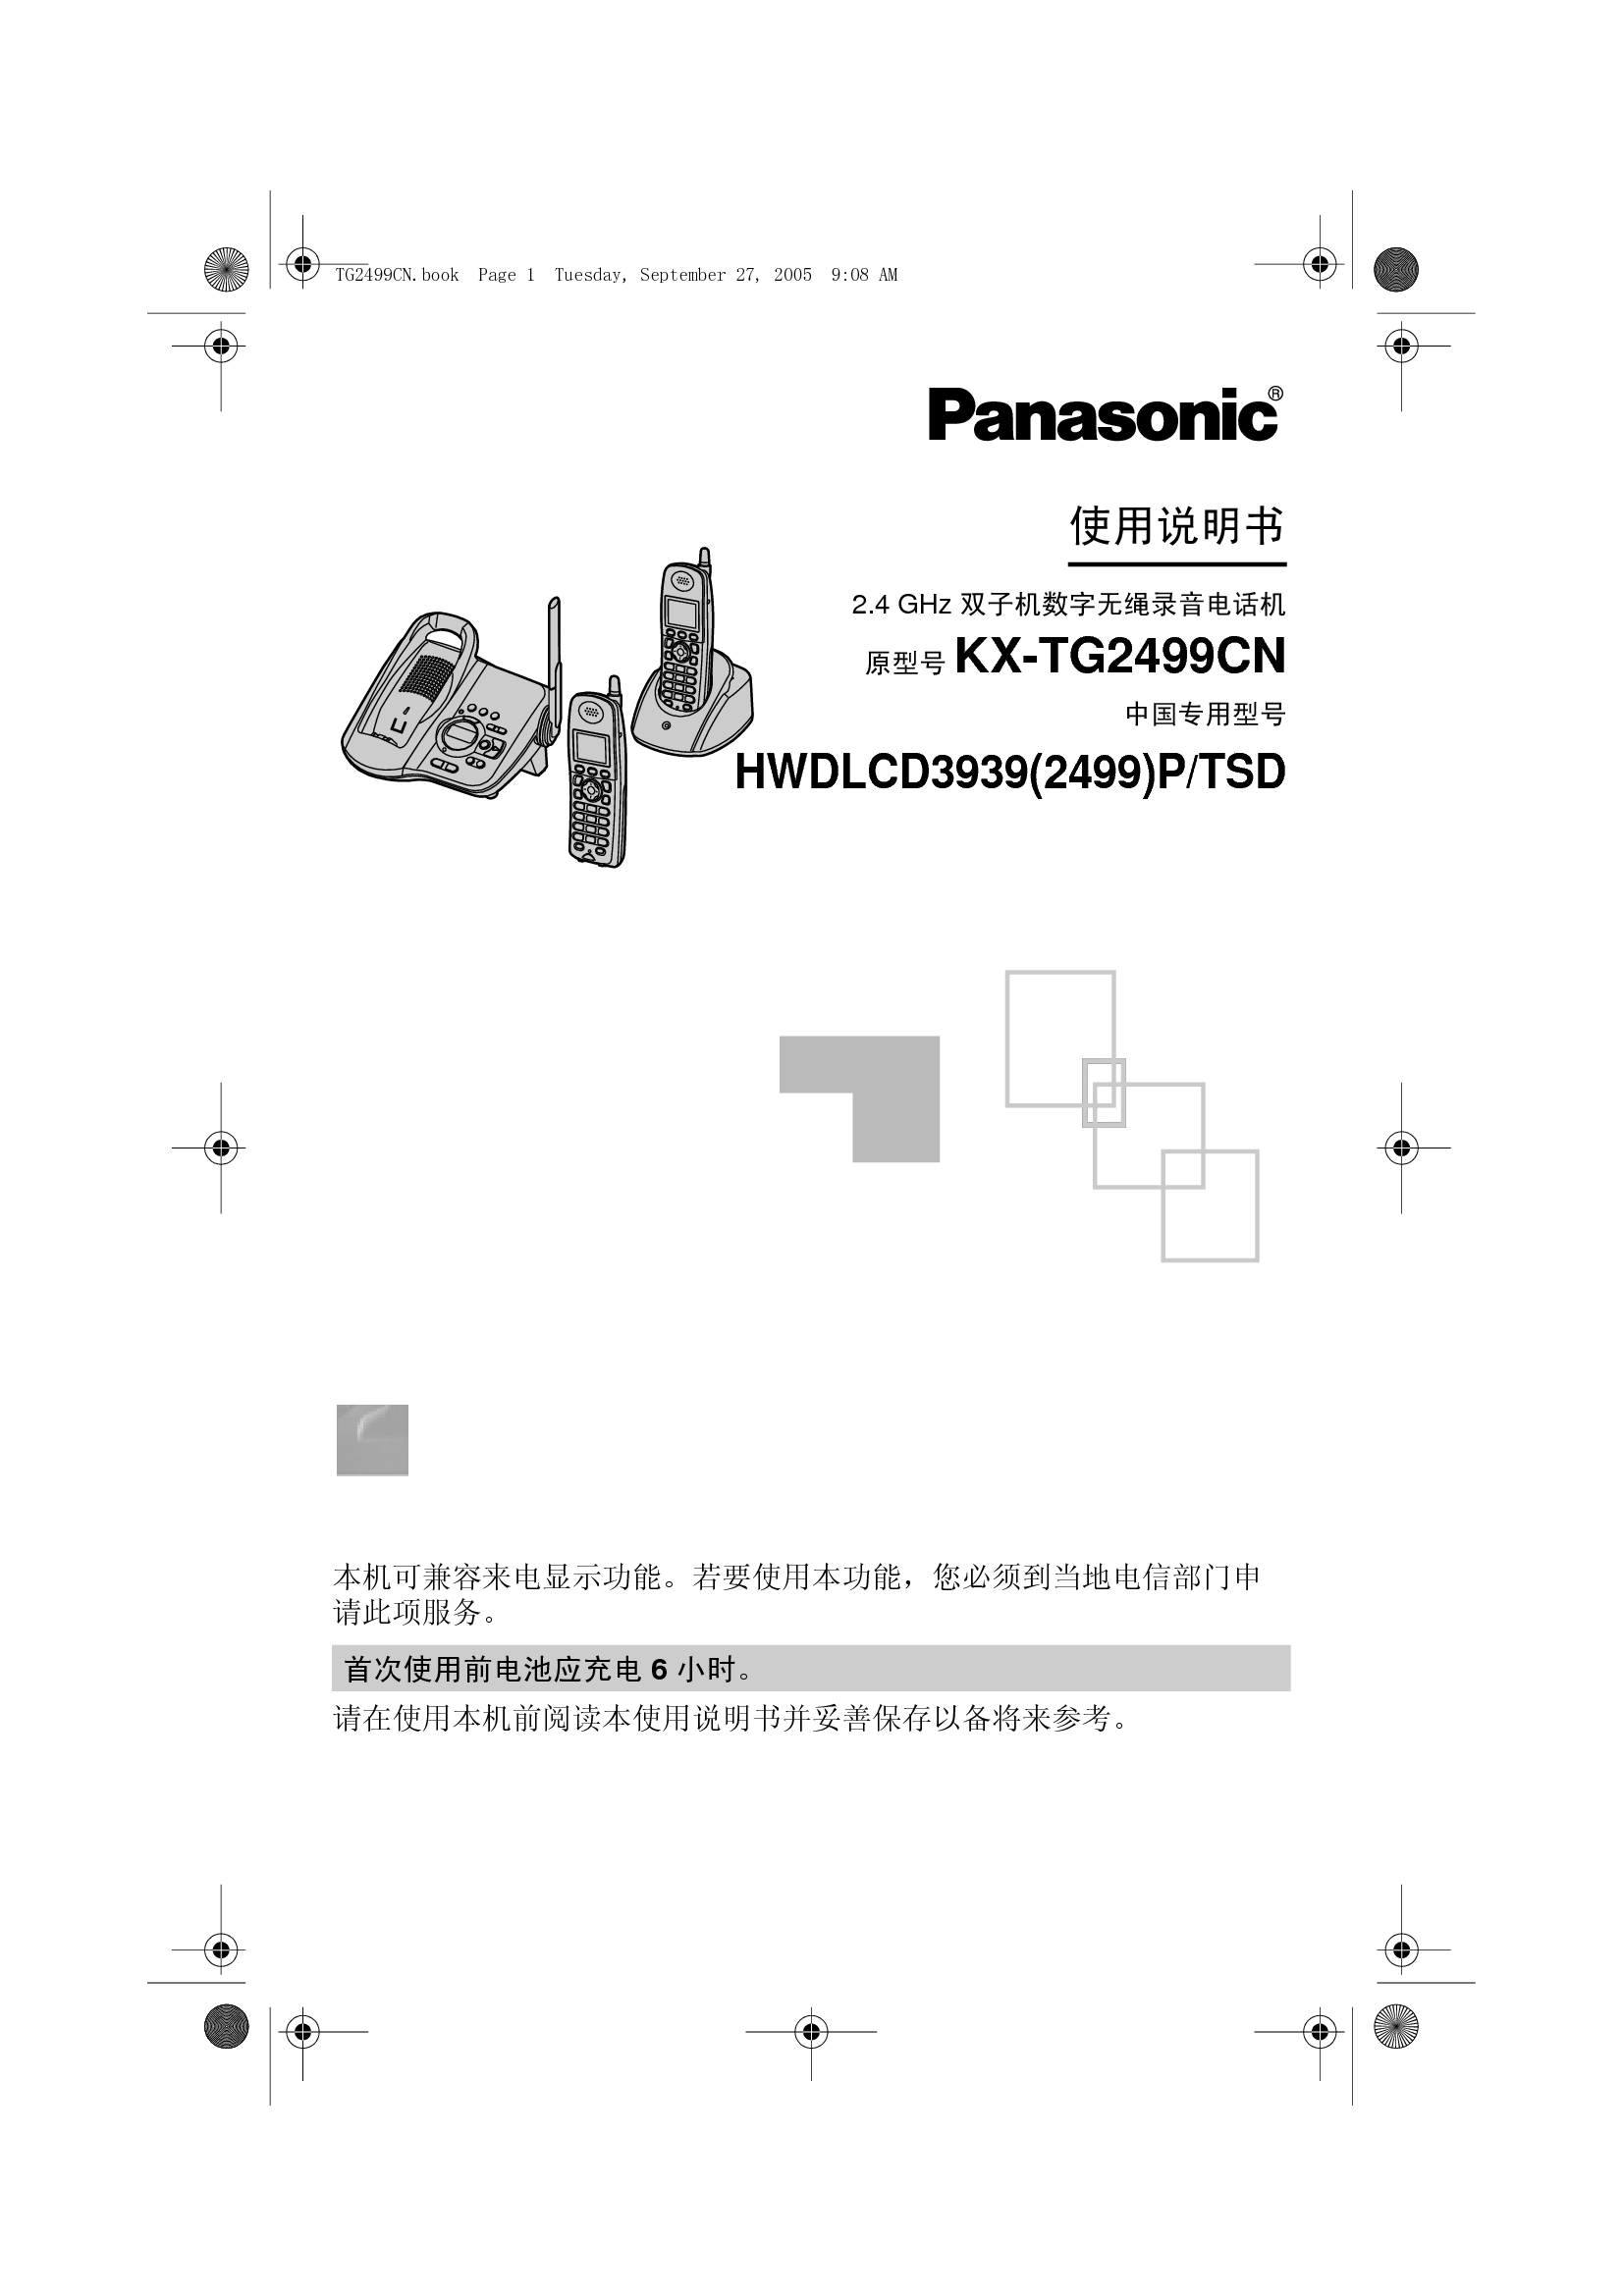 松下 Panasonic HWDLCD3939(2499)P/TSD, KX-TG2499CN 说明书 封面